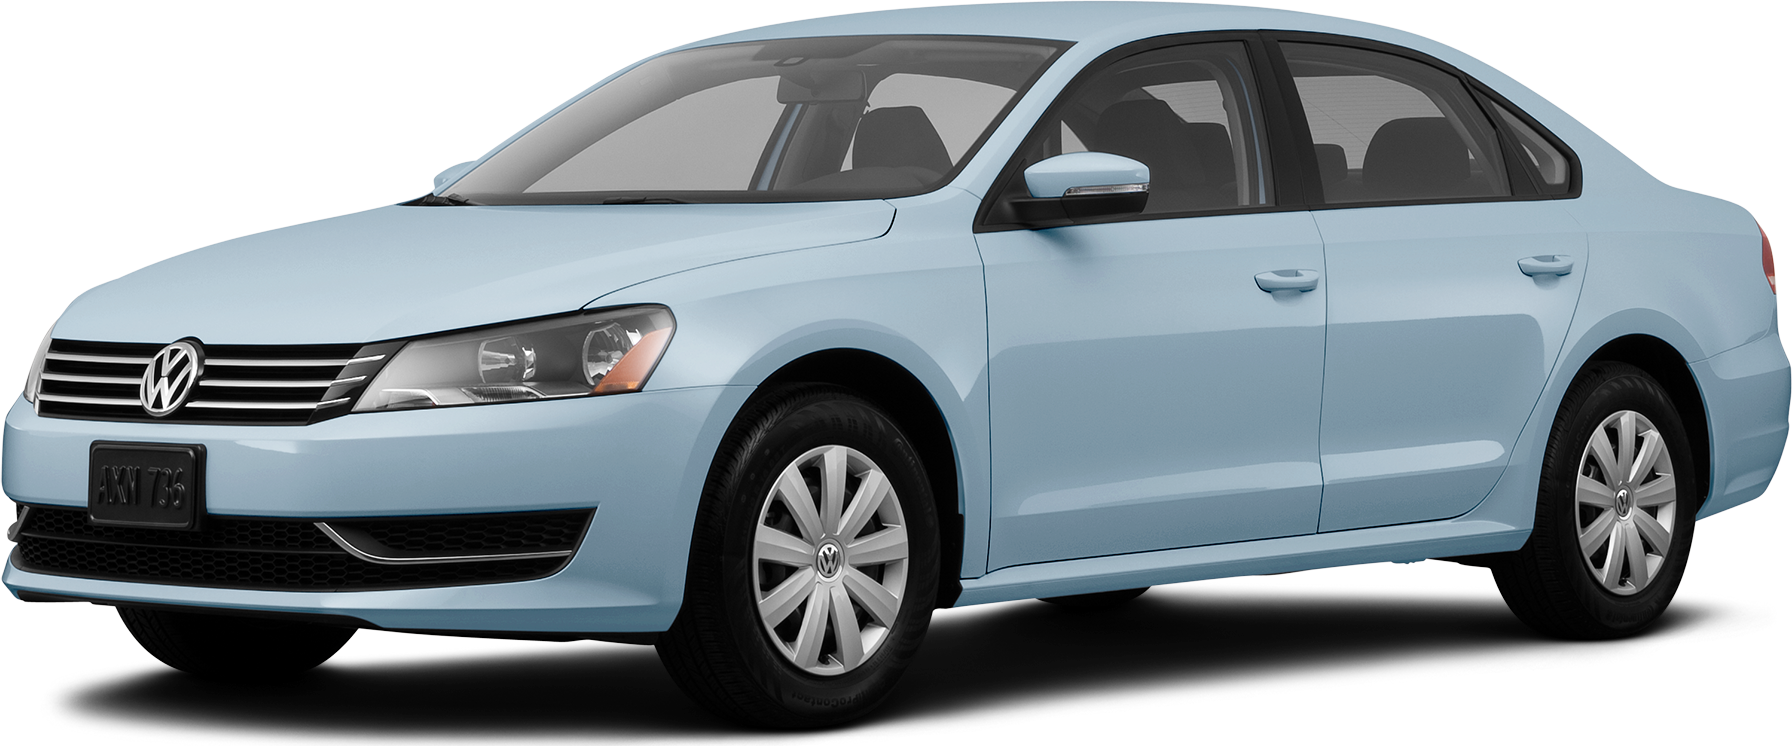 2009 Volkswagen Passat Price, Value, Ratings & Reviews